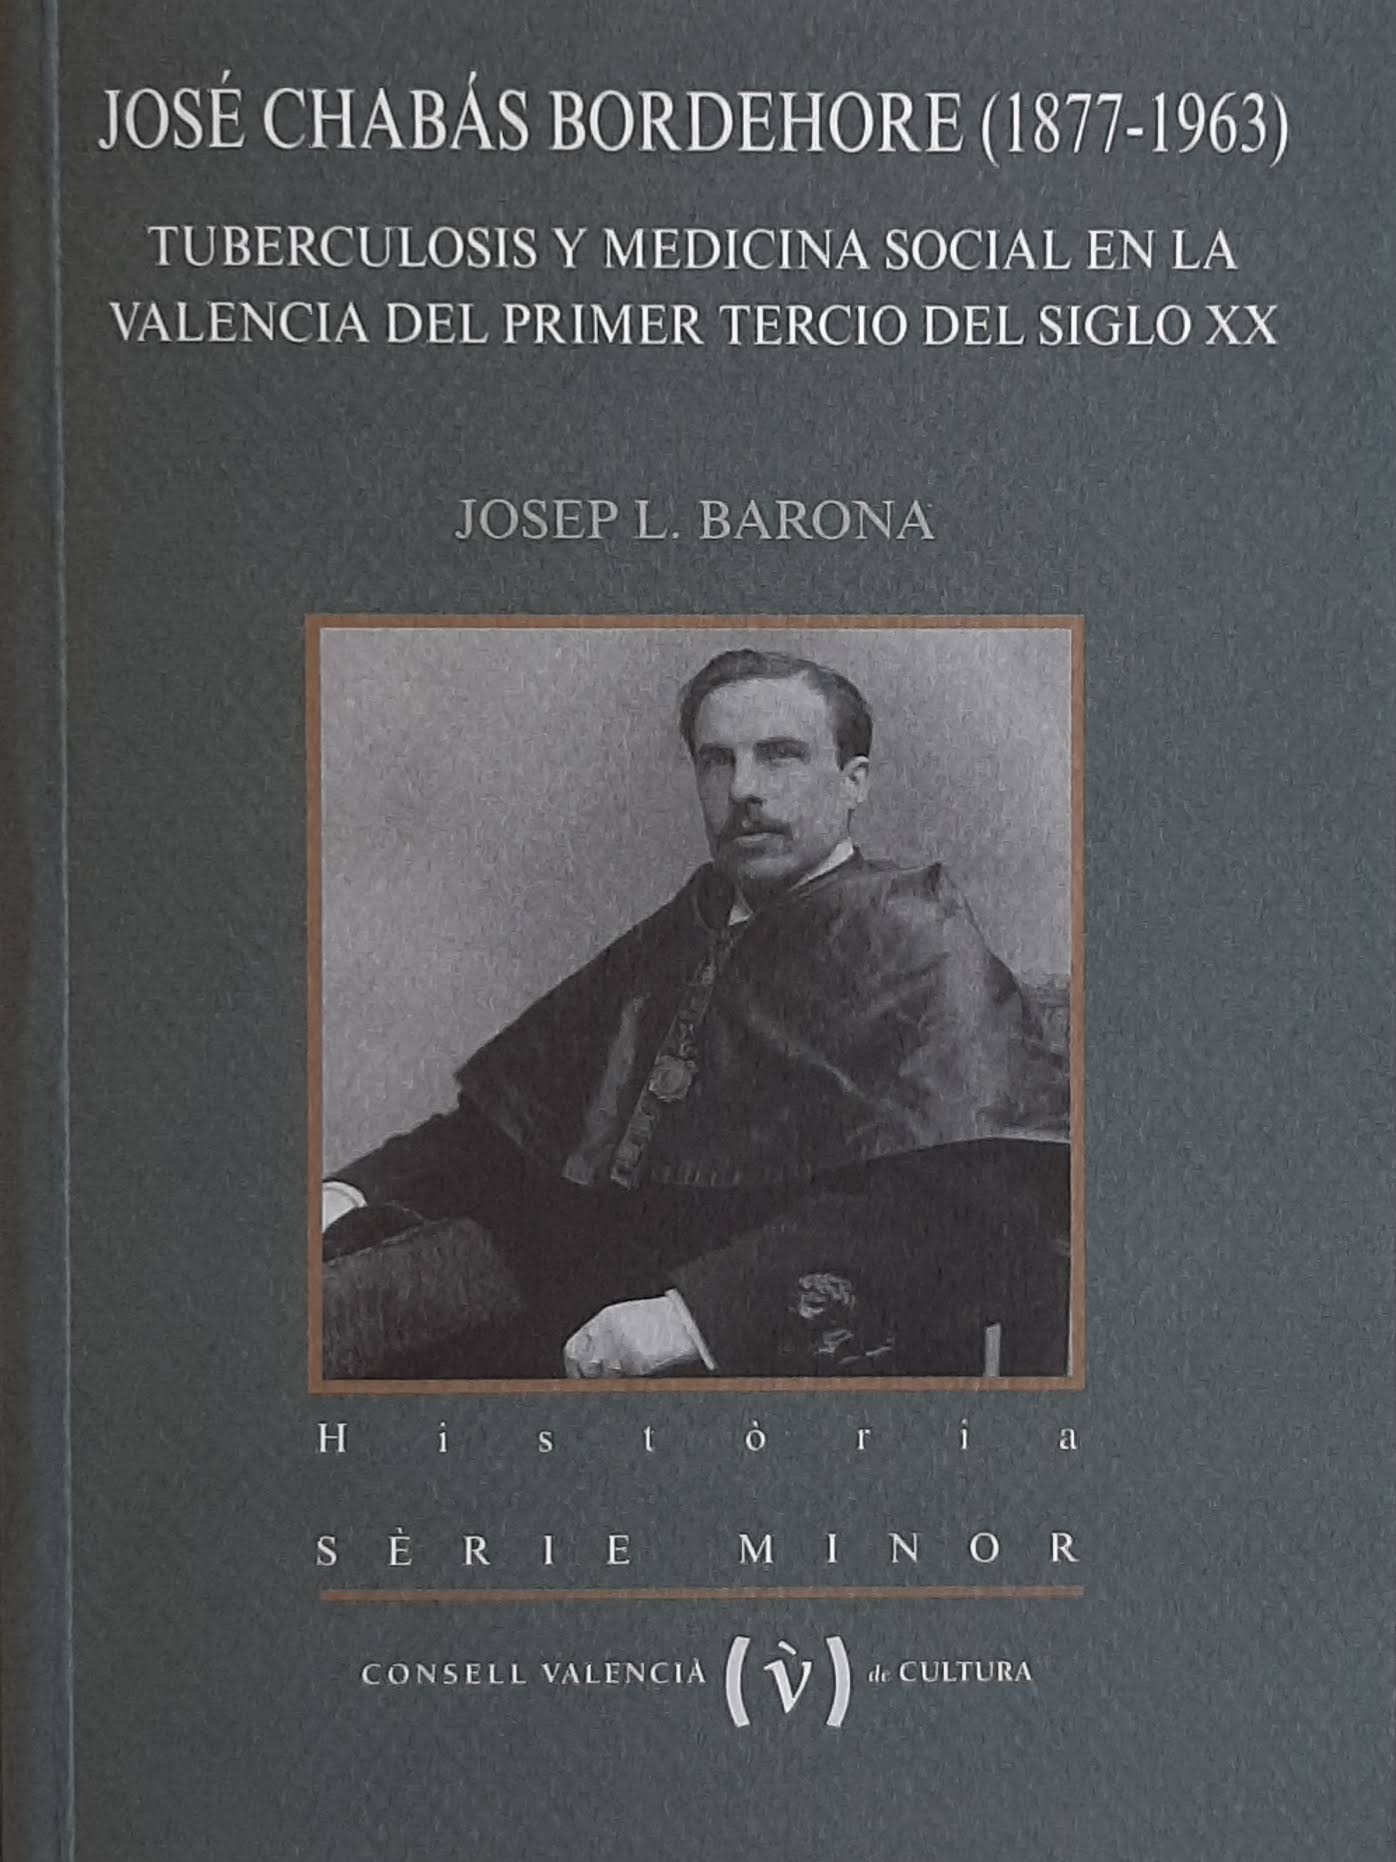 José Chabás Borderhore (1877-1963). Tuberculosis y medicina social en la Valencia del primer tercio del siglo XX. Nº 63. Sèrie Minor